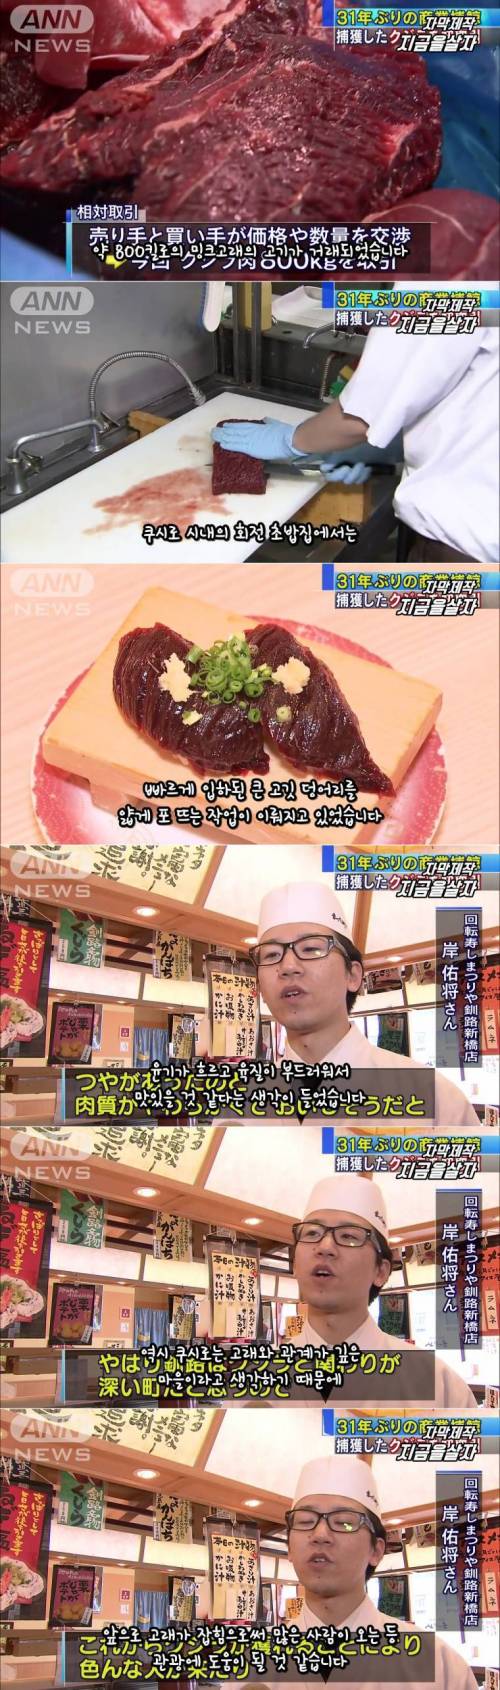 일본 고래 고기 거래 시작.jpg